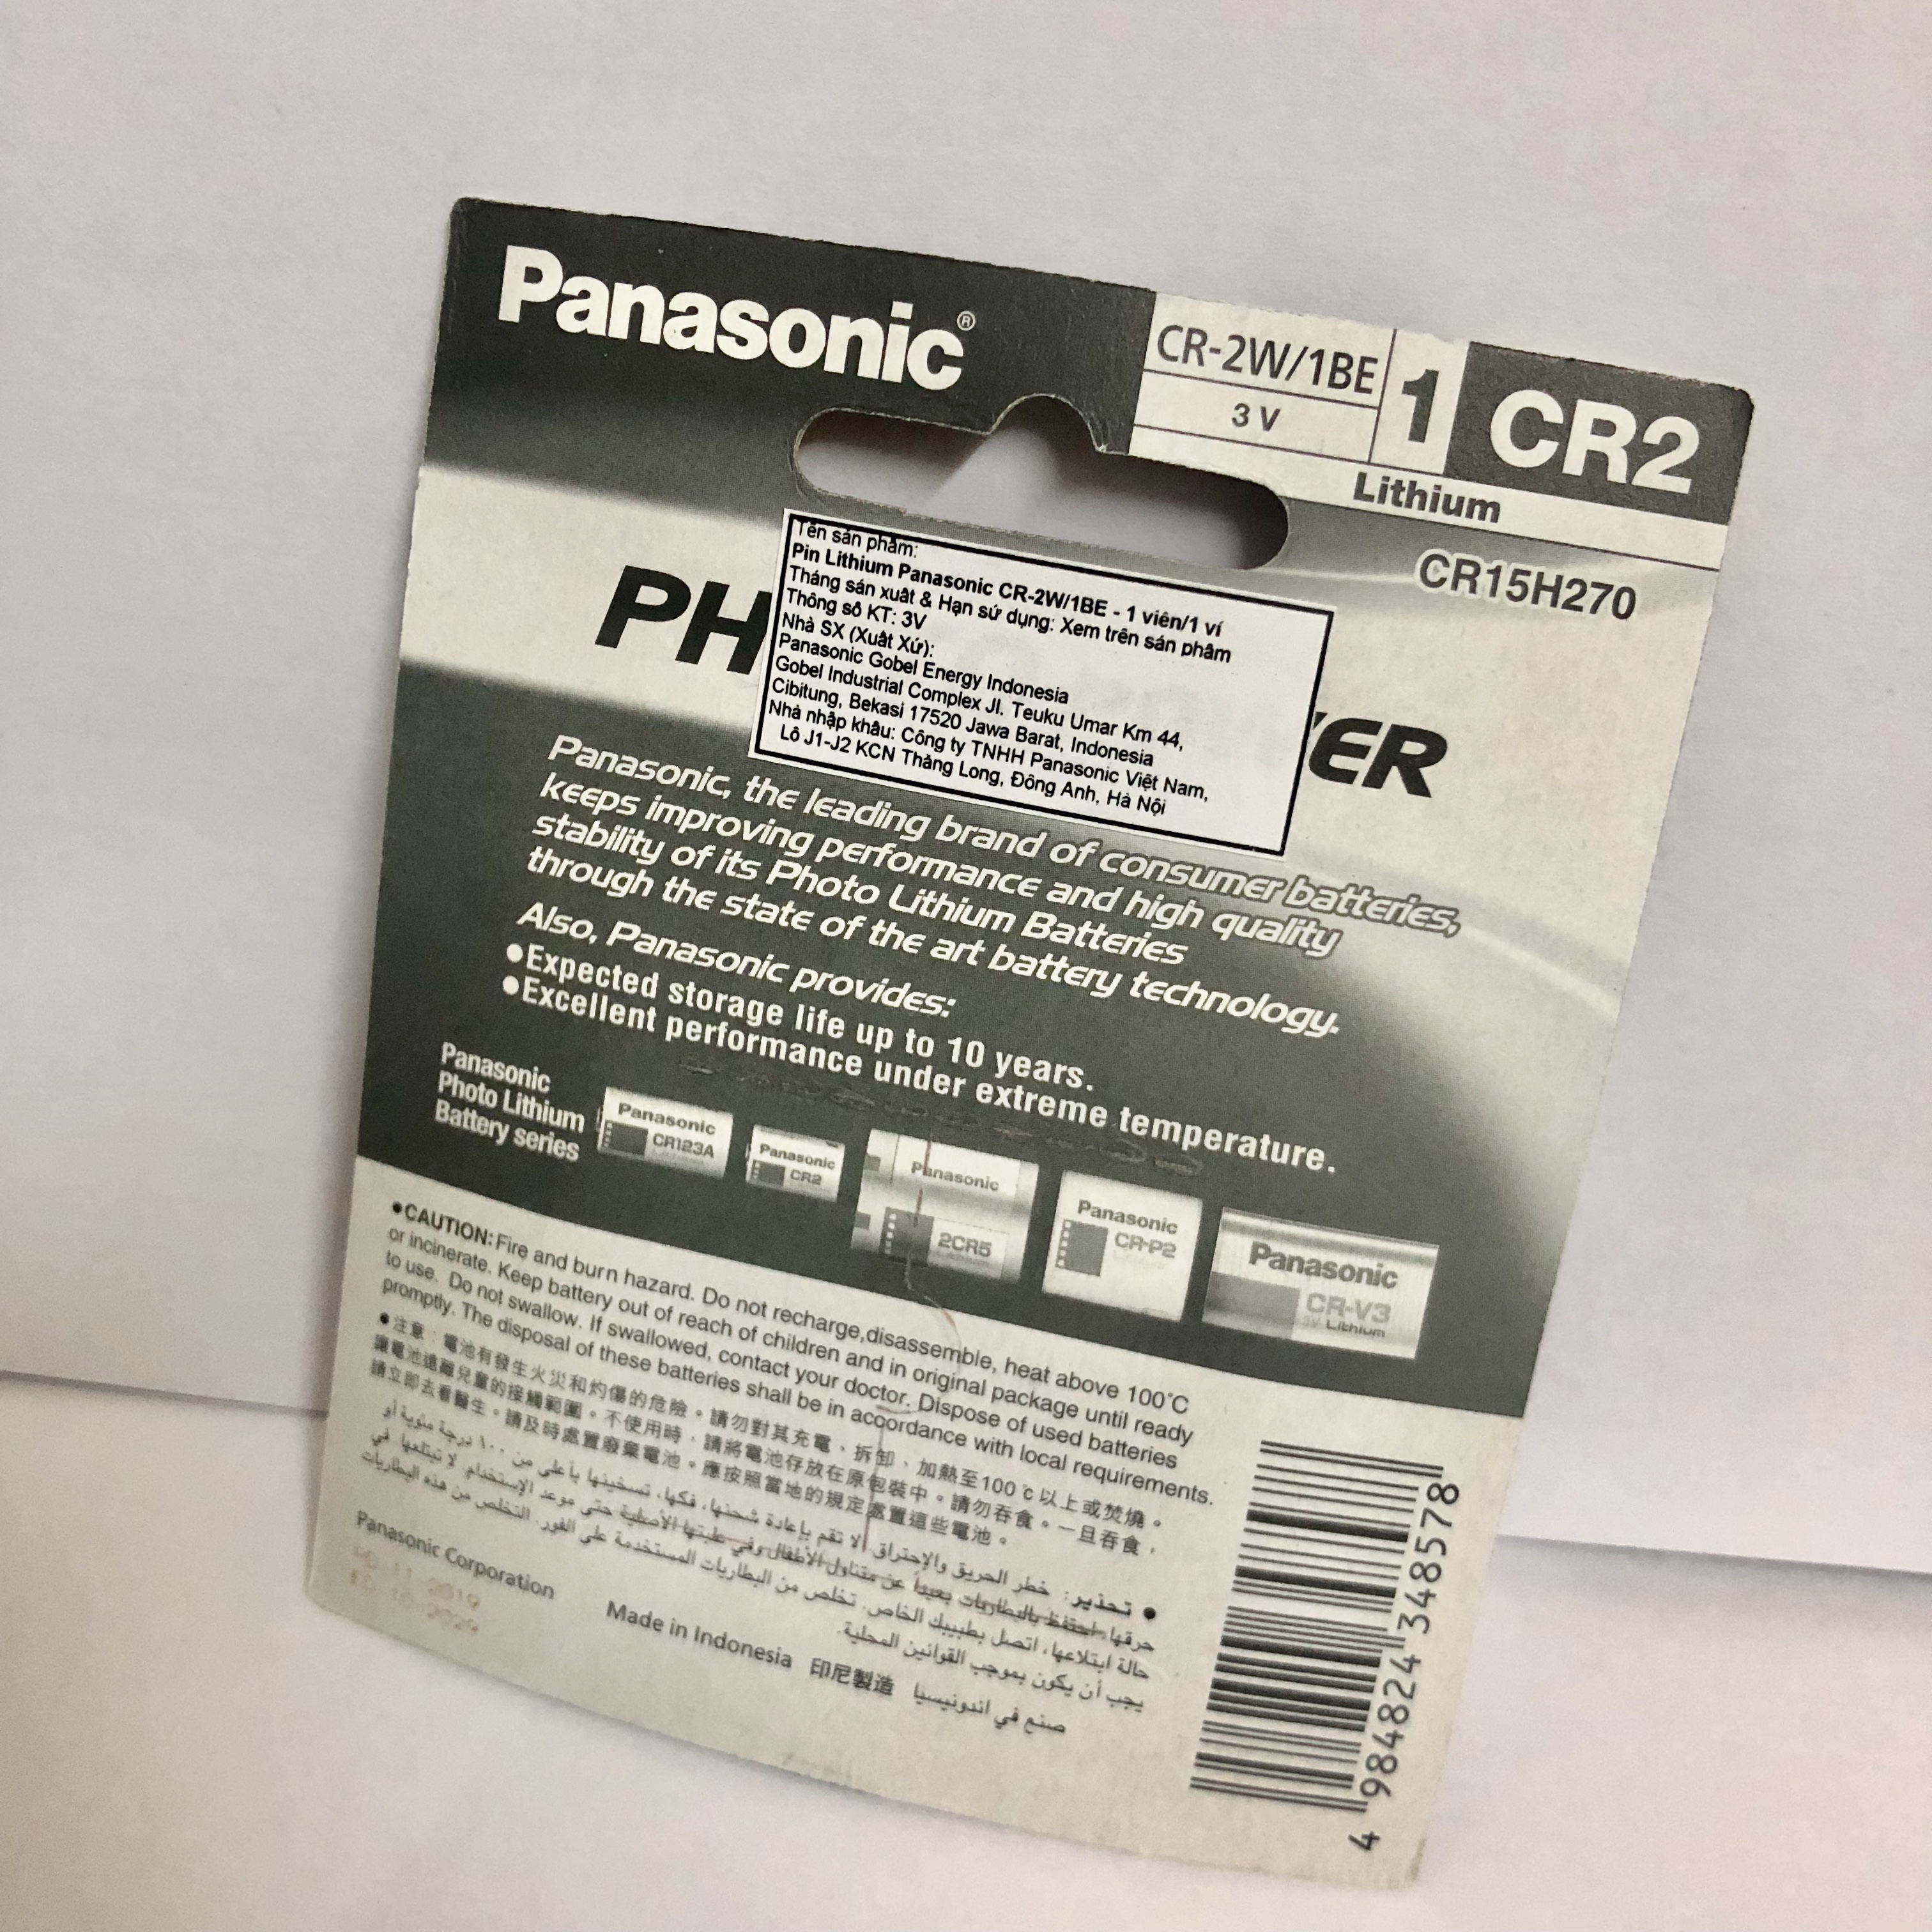 Hộp pin gồm 10 vỉ pin (vỉ 1 viên) Lithium Panasonic 3v CR-2W/1BE- Hàng chính hãng